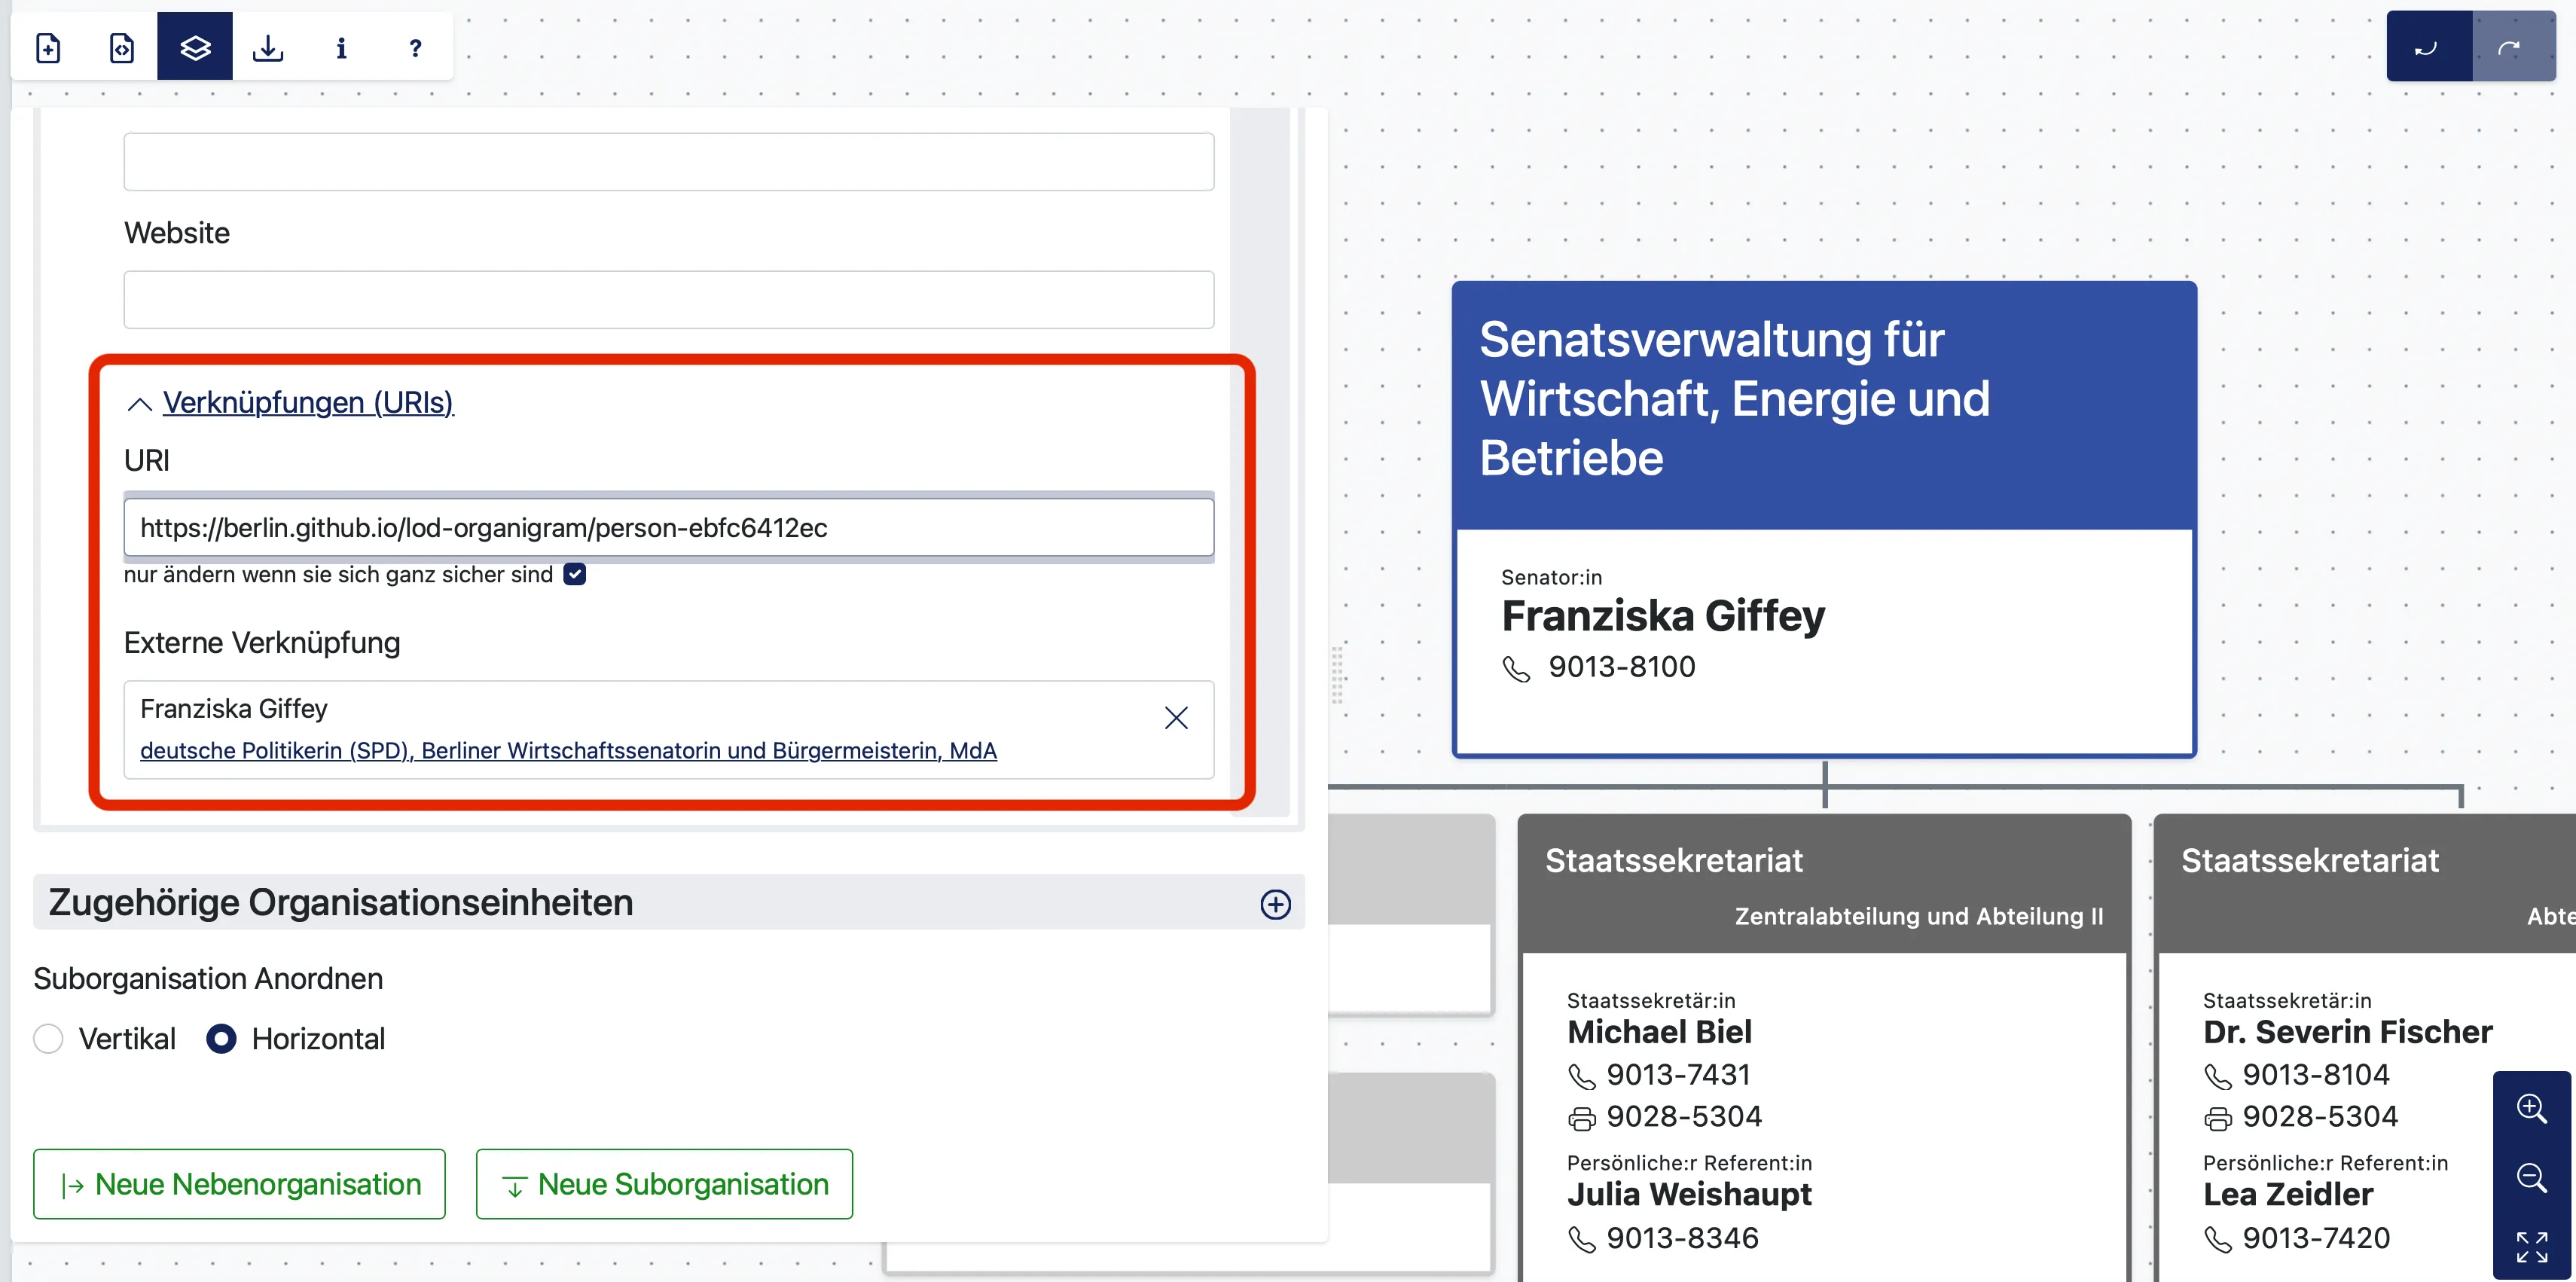 Anlegen einer URI im Organigramm-Tool für Franziska Giffey und Verknüpfung mit der existierenden Wikidata-URI.